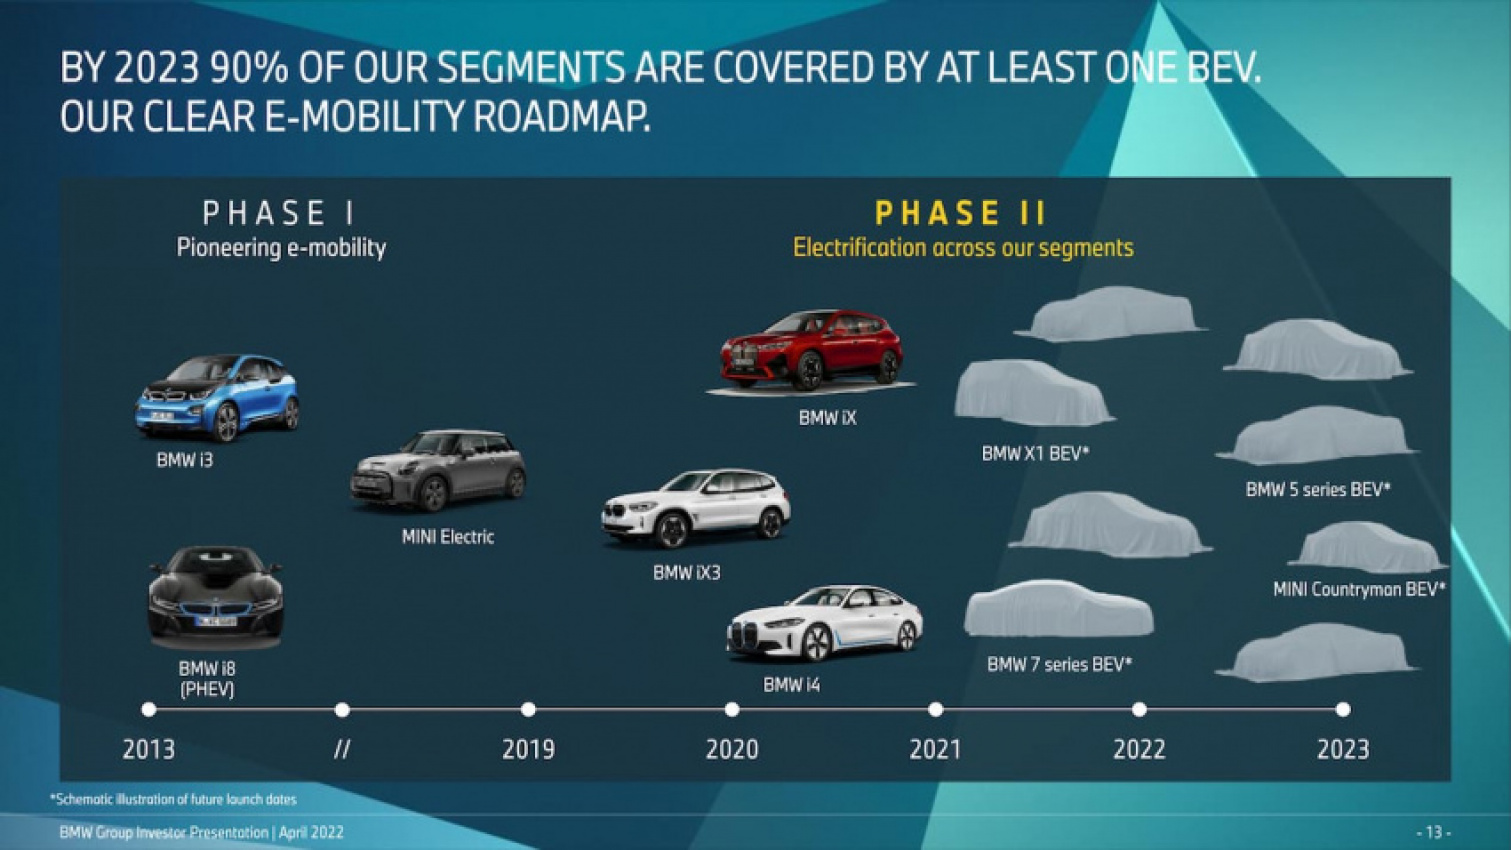 autos, cars, electric vehicle, mini, mini countryman, vnex, mini countryman electric confirmed, to launch in 2023 [update]